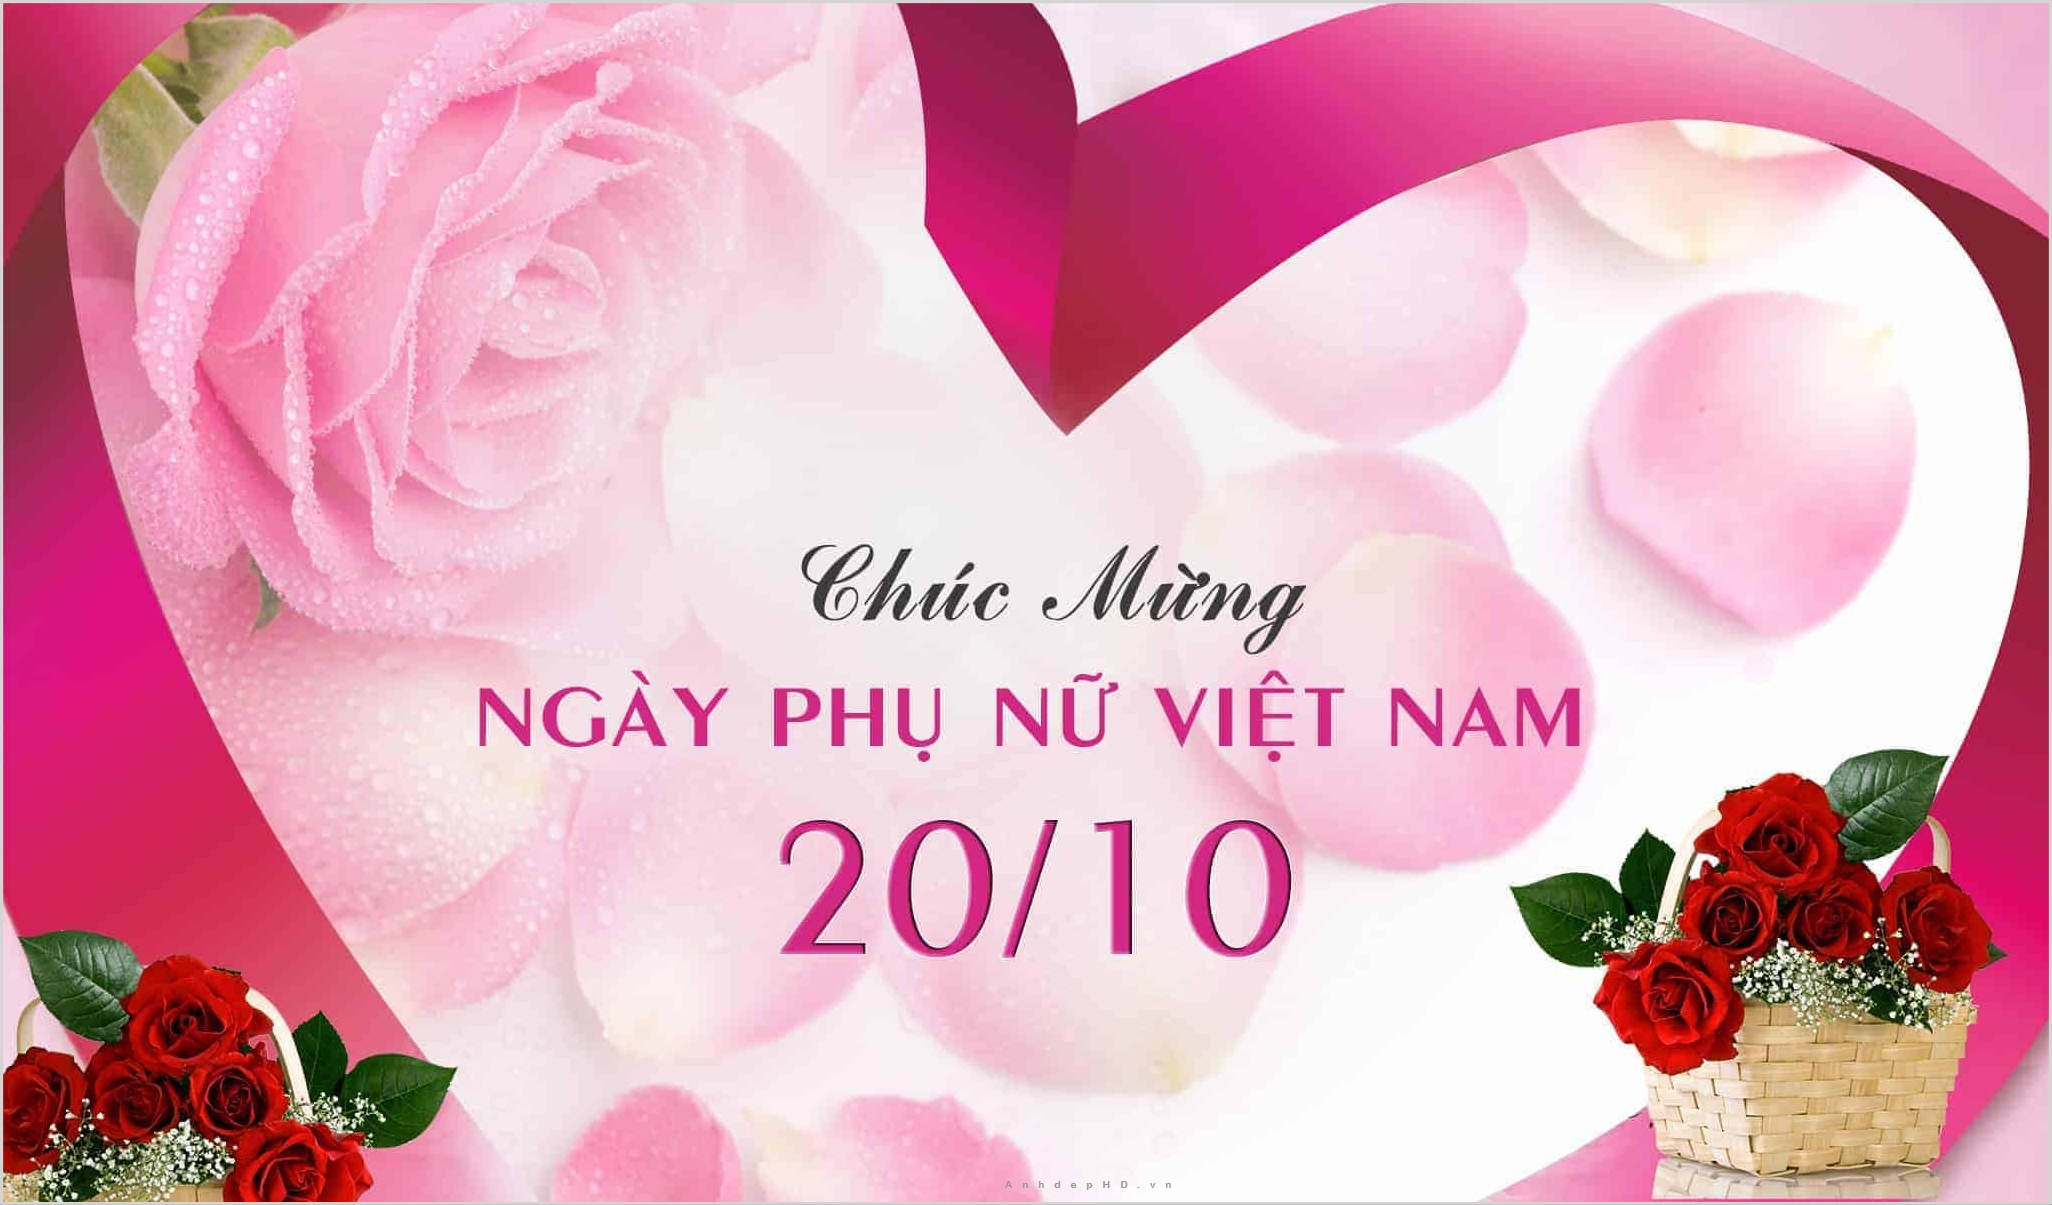 Hình Ảnh 20 10 Đẹp Hài, Ý Nghĩa Chúc Mừng Phụ Nữ Việt Nam